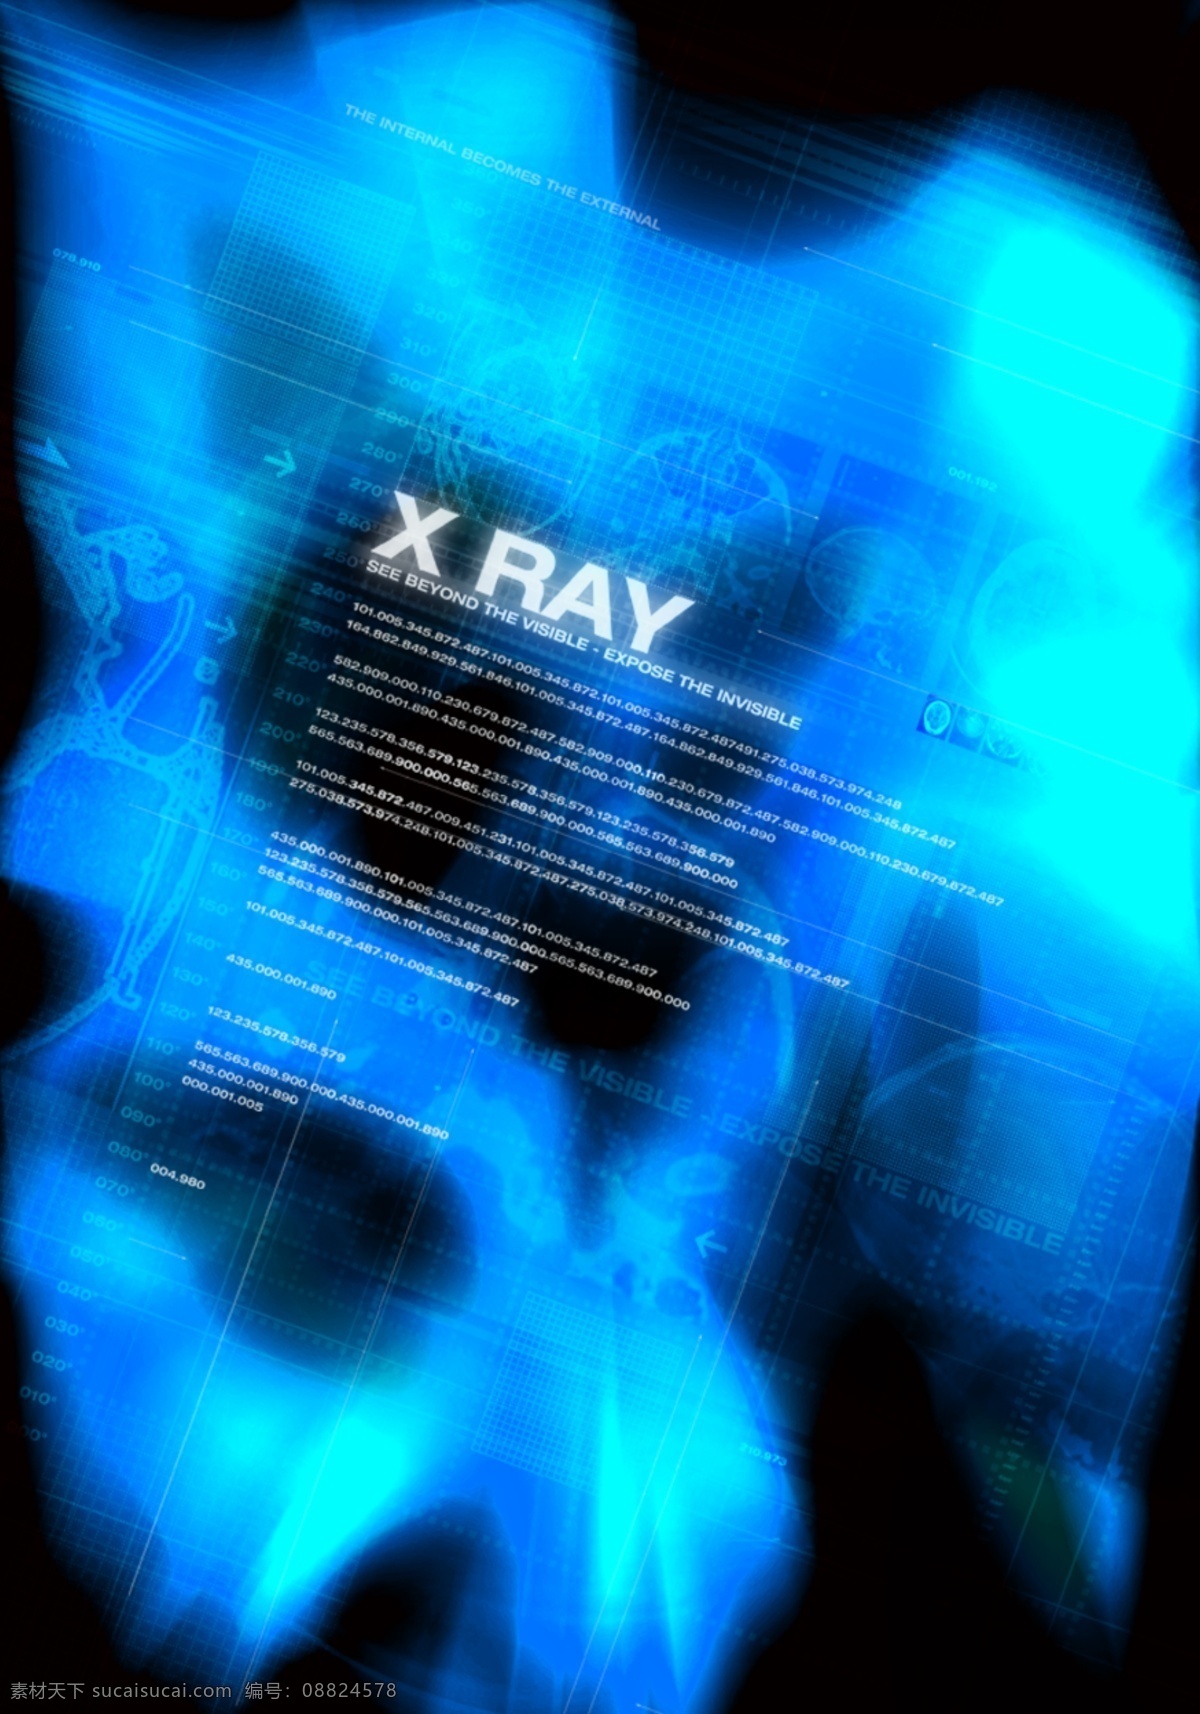 x 射线 数码 游戏背景 分层 3d 抽象 底纹 动感 放射性 后现代 科技 力量 梦幻 x射线 游戏背景设计 前卫 异度空间 速度 艺术 张力 原创设计 其他原创设计